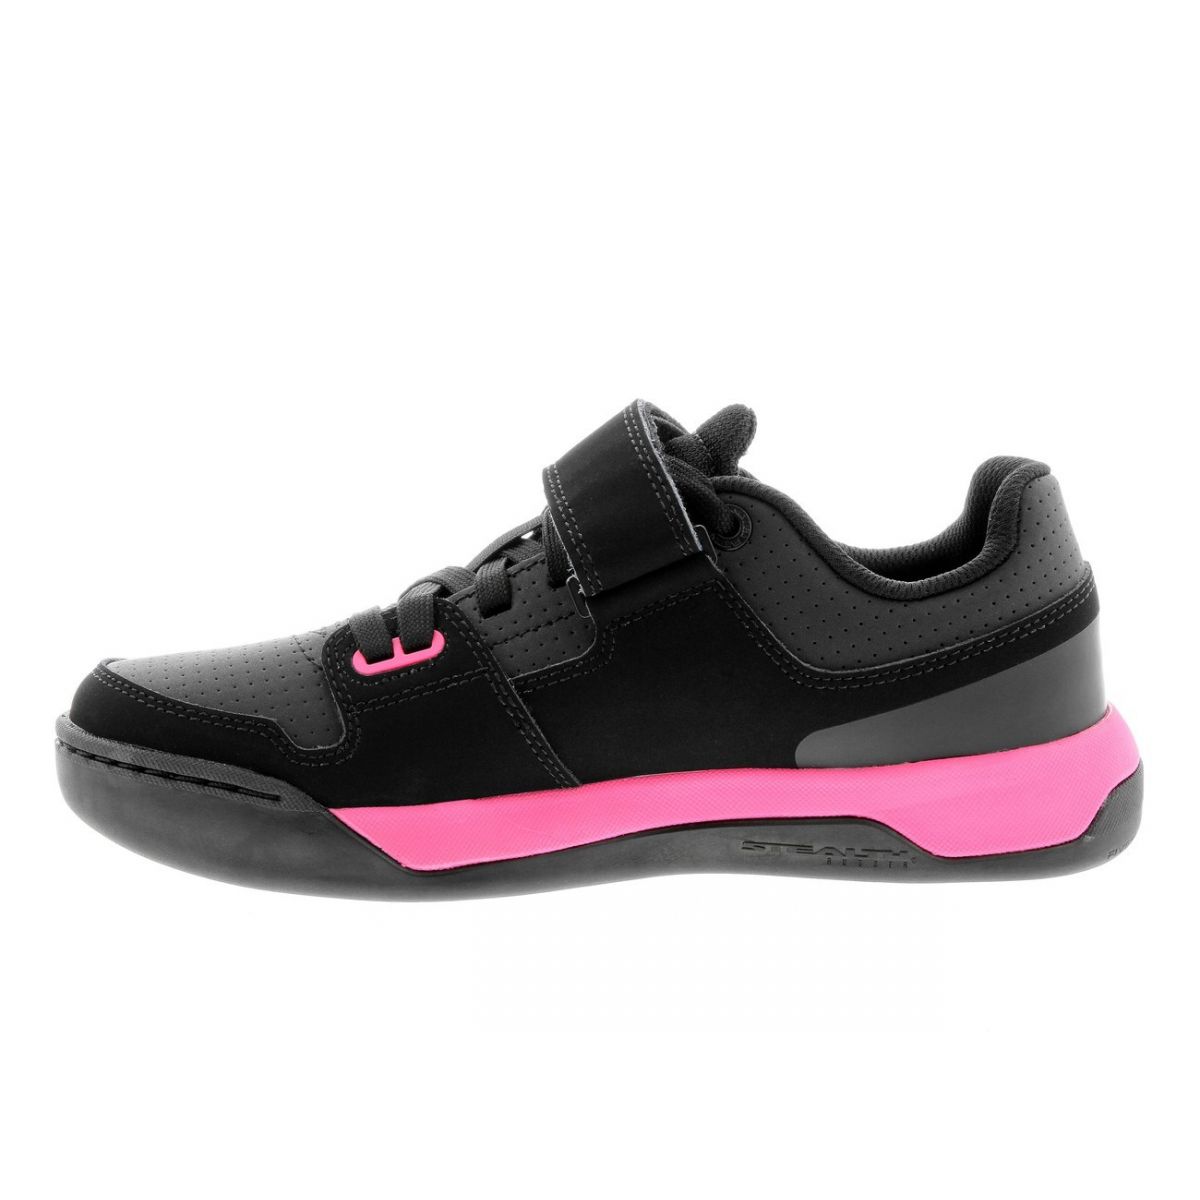 Zapatillas para pedal automático de mujer de color negro y rosa | Five ten Hellcat